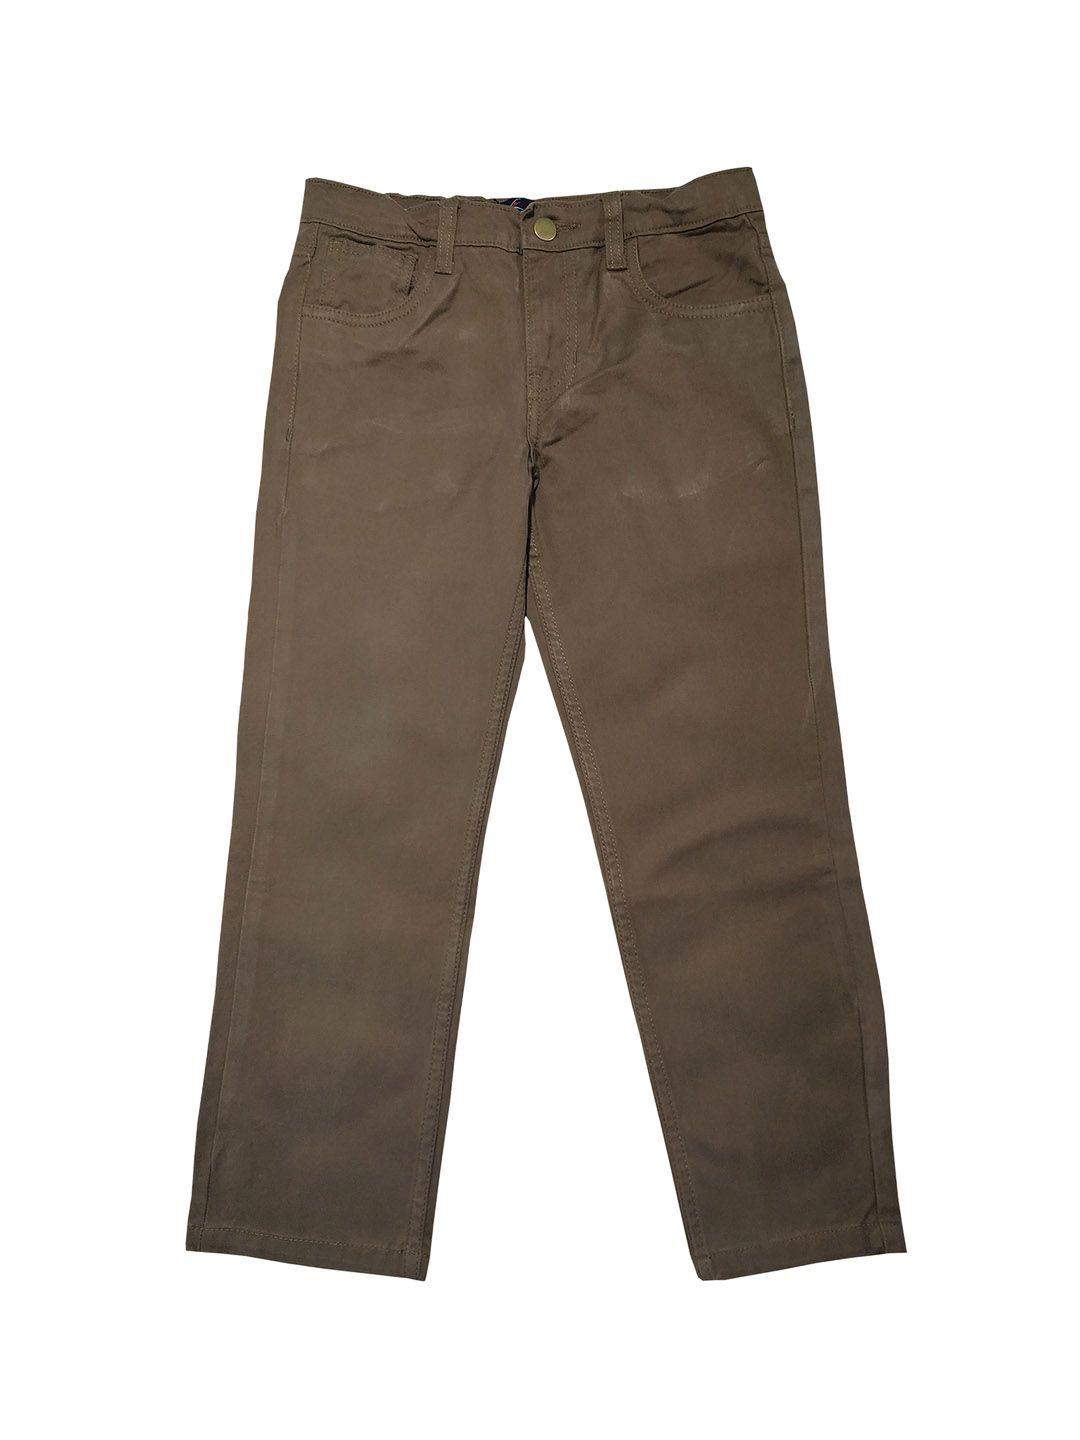 kiddopanti-boys-brown-regular-fit-solid-regular-trousers